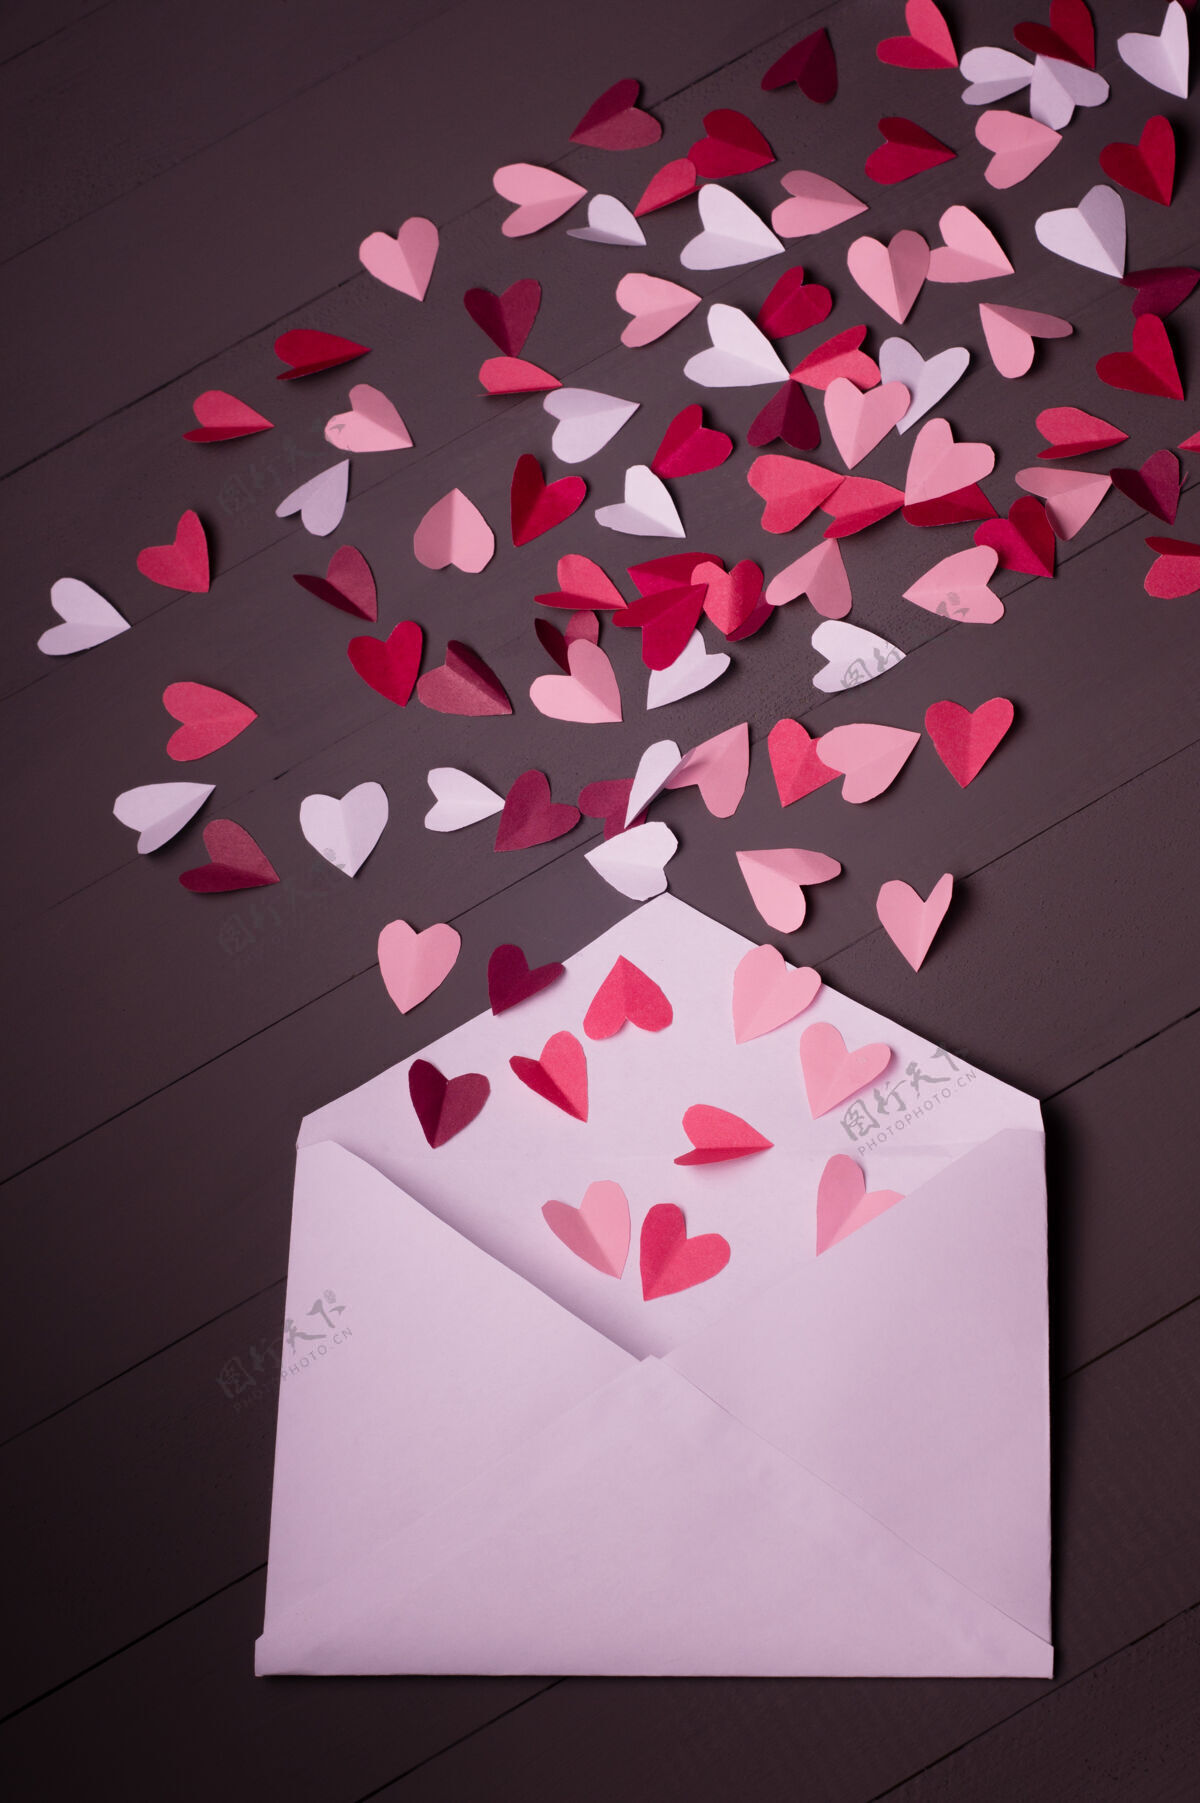 信封红色 白色和粉色的纸心装在灰色木质的白色信封里信纸平铺